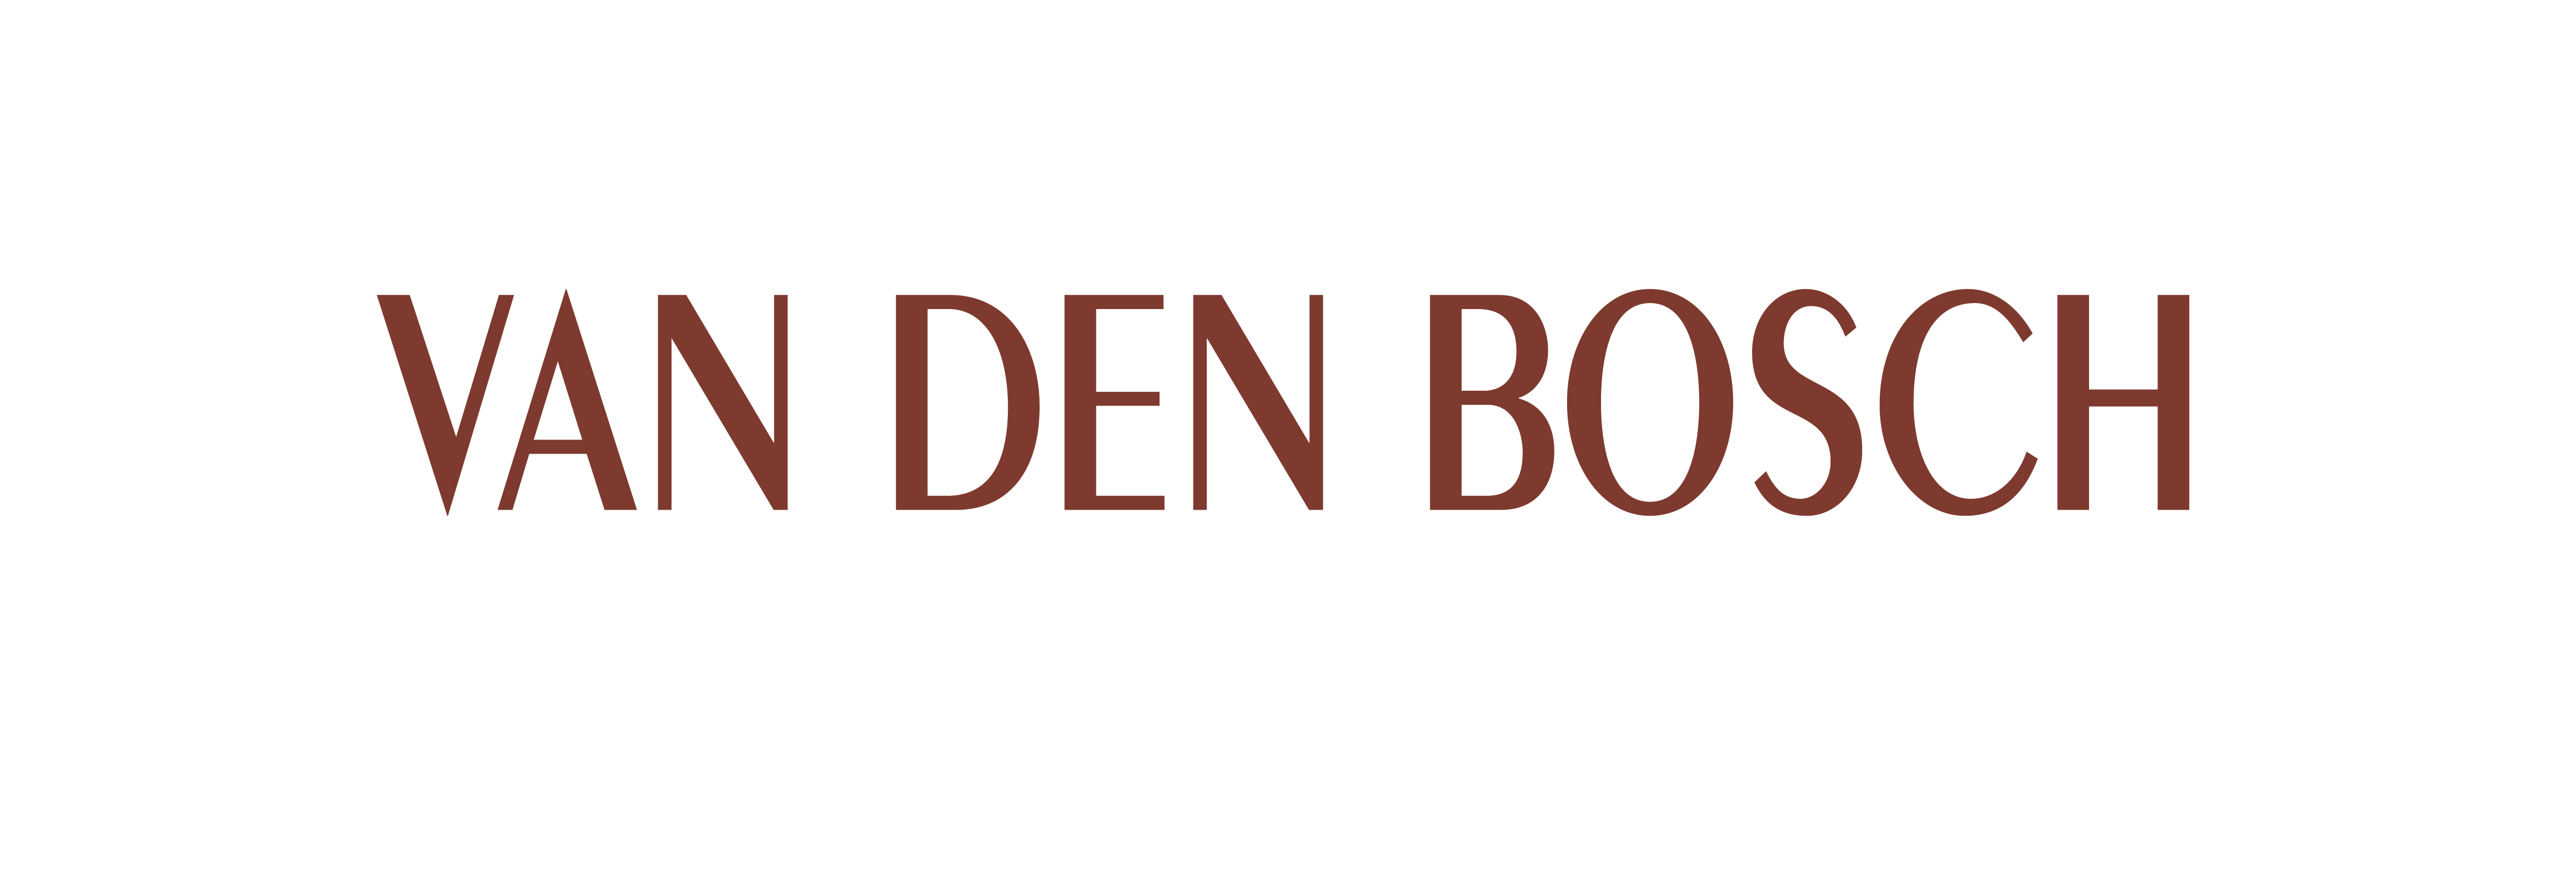 Van Den Bosch | Schoenen & Lederwaren